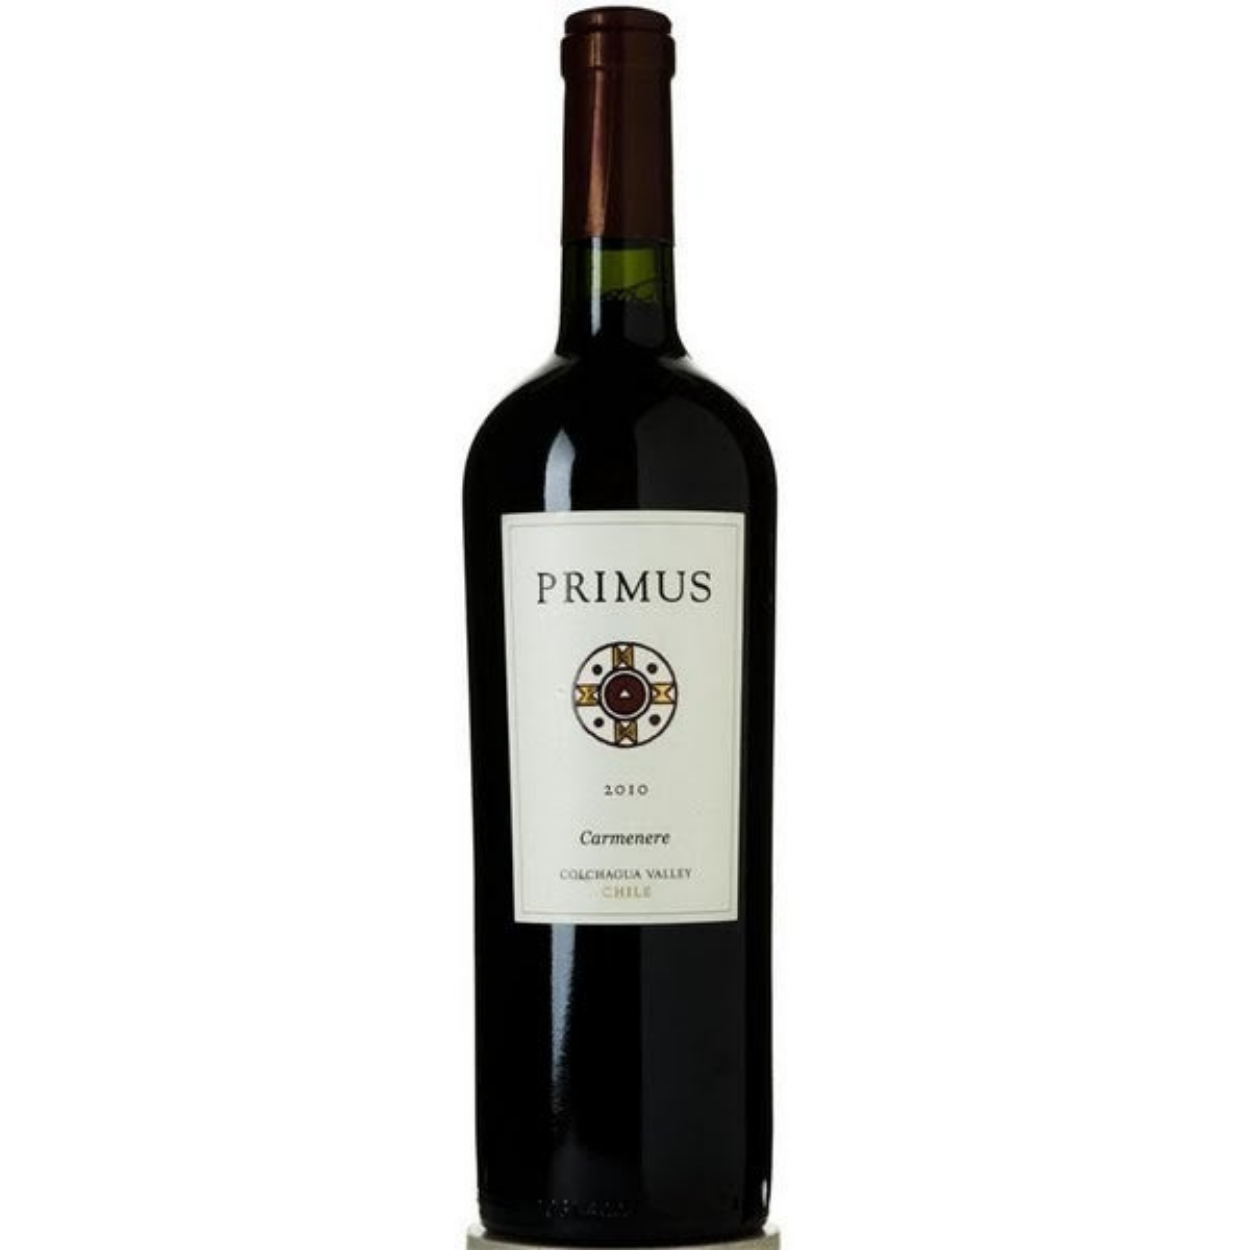 2018 Veramonte Primus Carmenere Colchagua Valley Chile - The Wine Connection